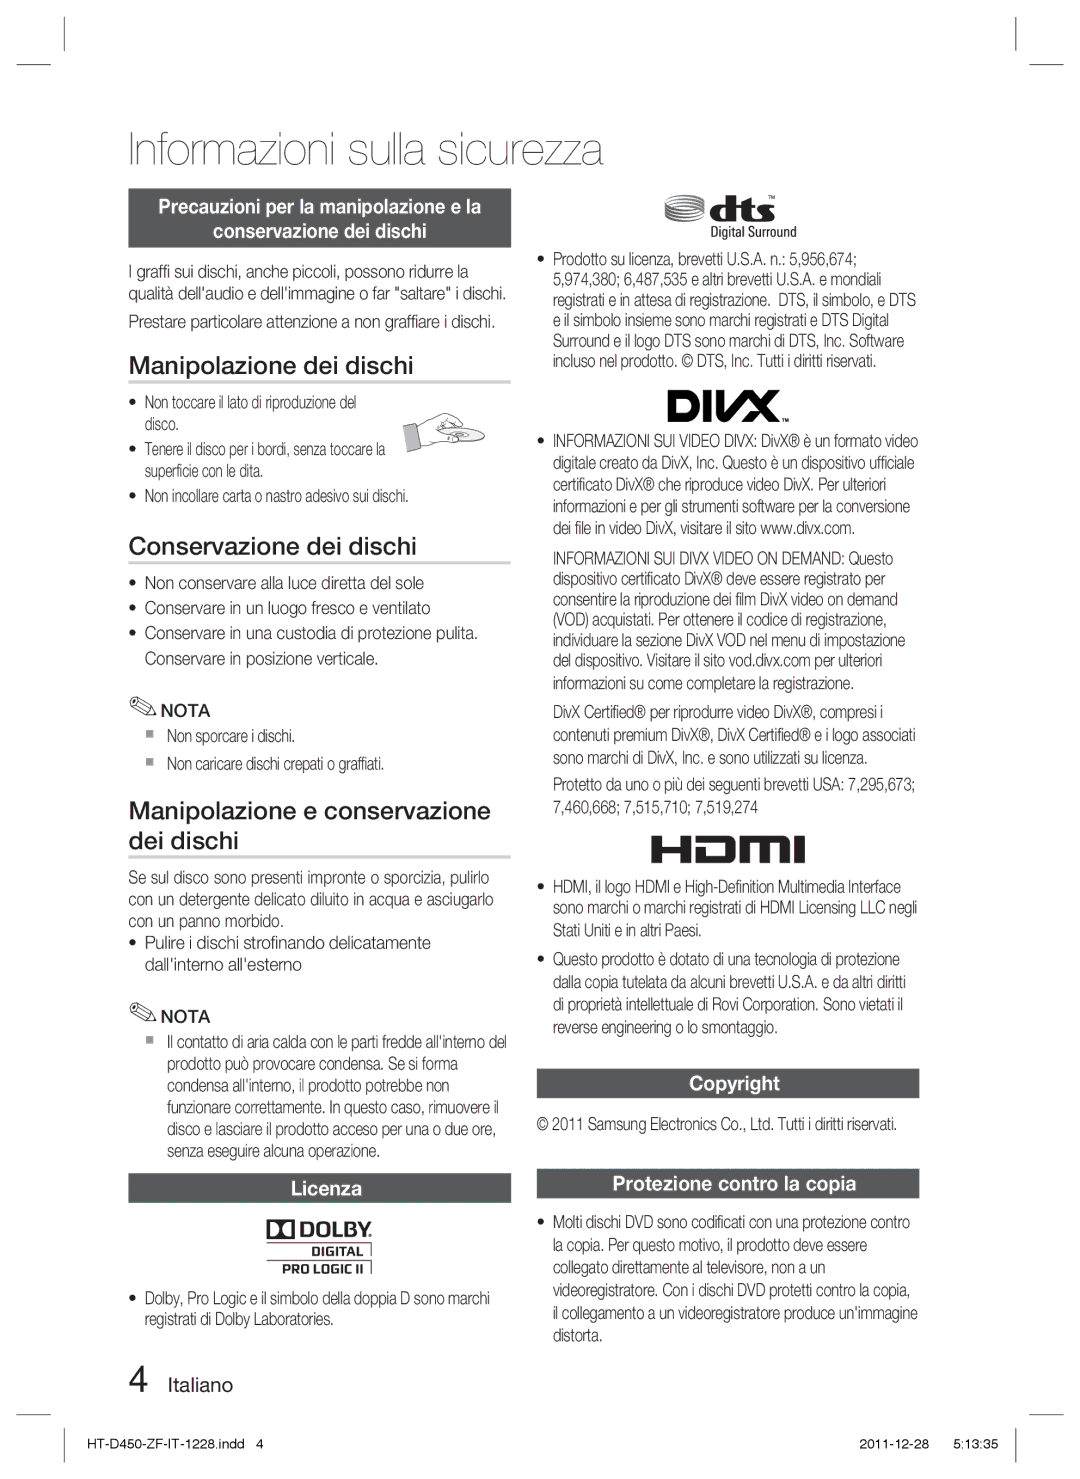 Samsung HT-D455/ZF manual Manipolazione dei dischi, Conservazione dei dischi, Manipolazione e conservazione dei dischi 